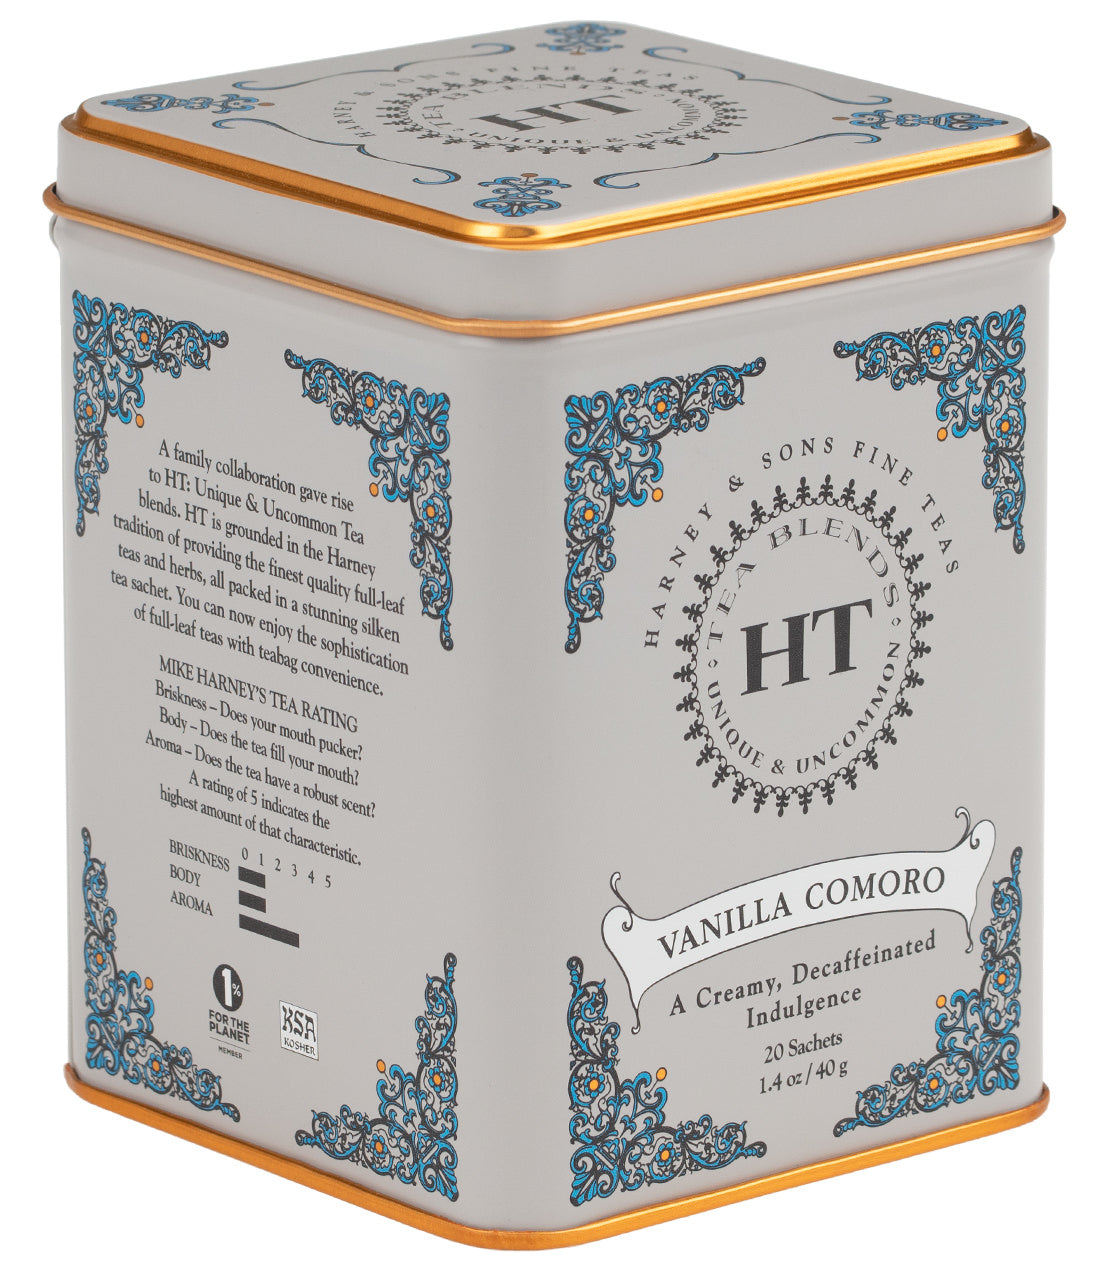 Decaf Vanilla Comoro - Sachets HT Tin of 20 Sachets - Harney & Sons Fine Teas